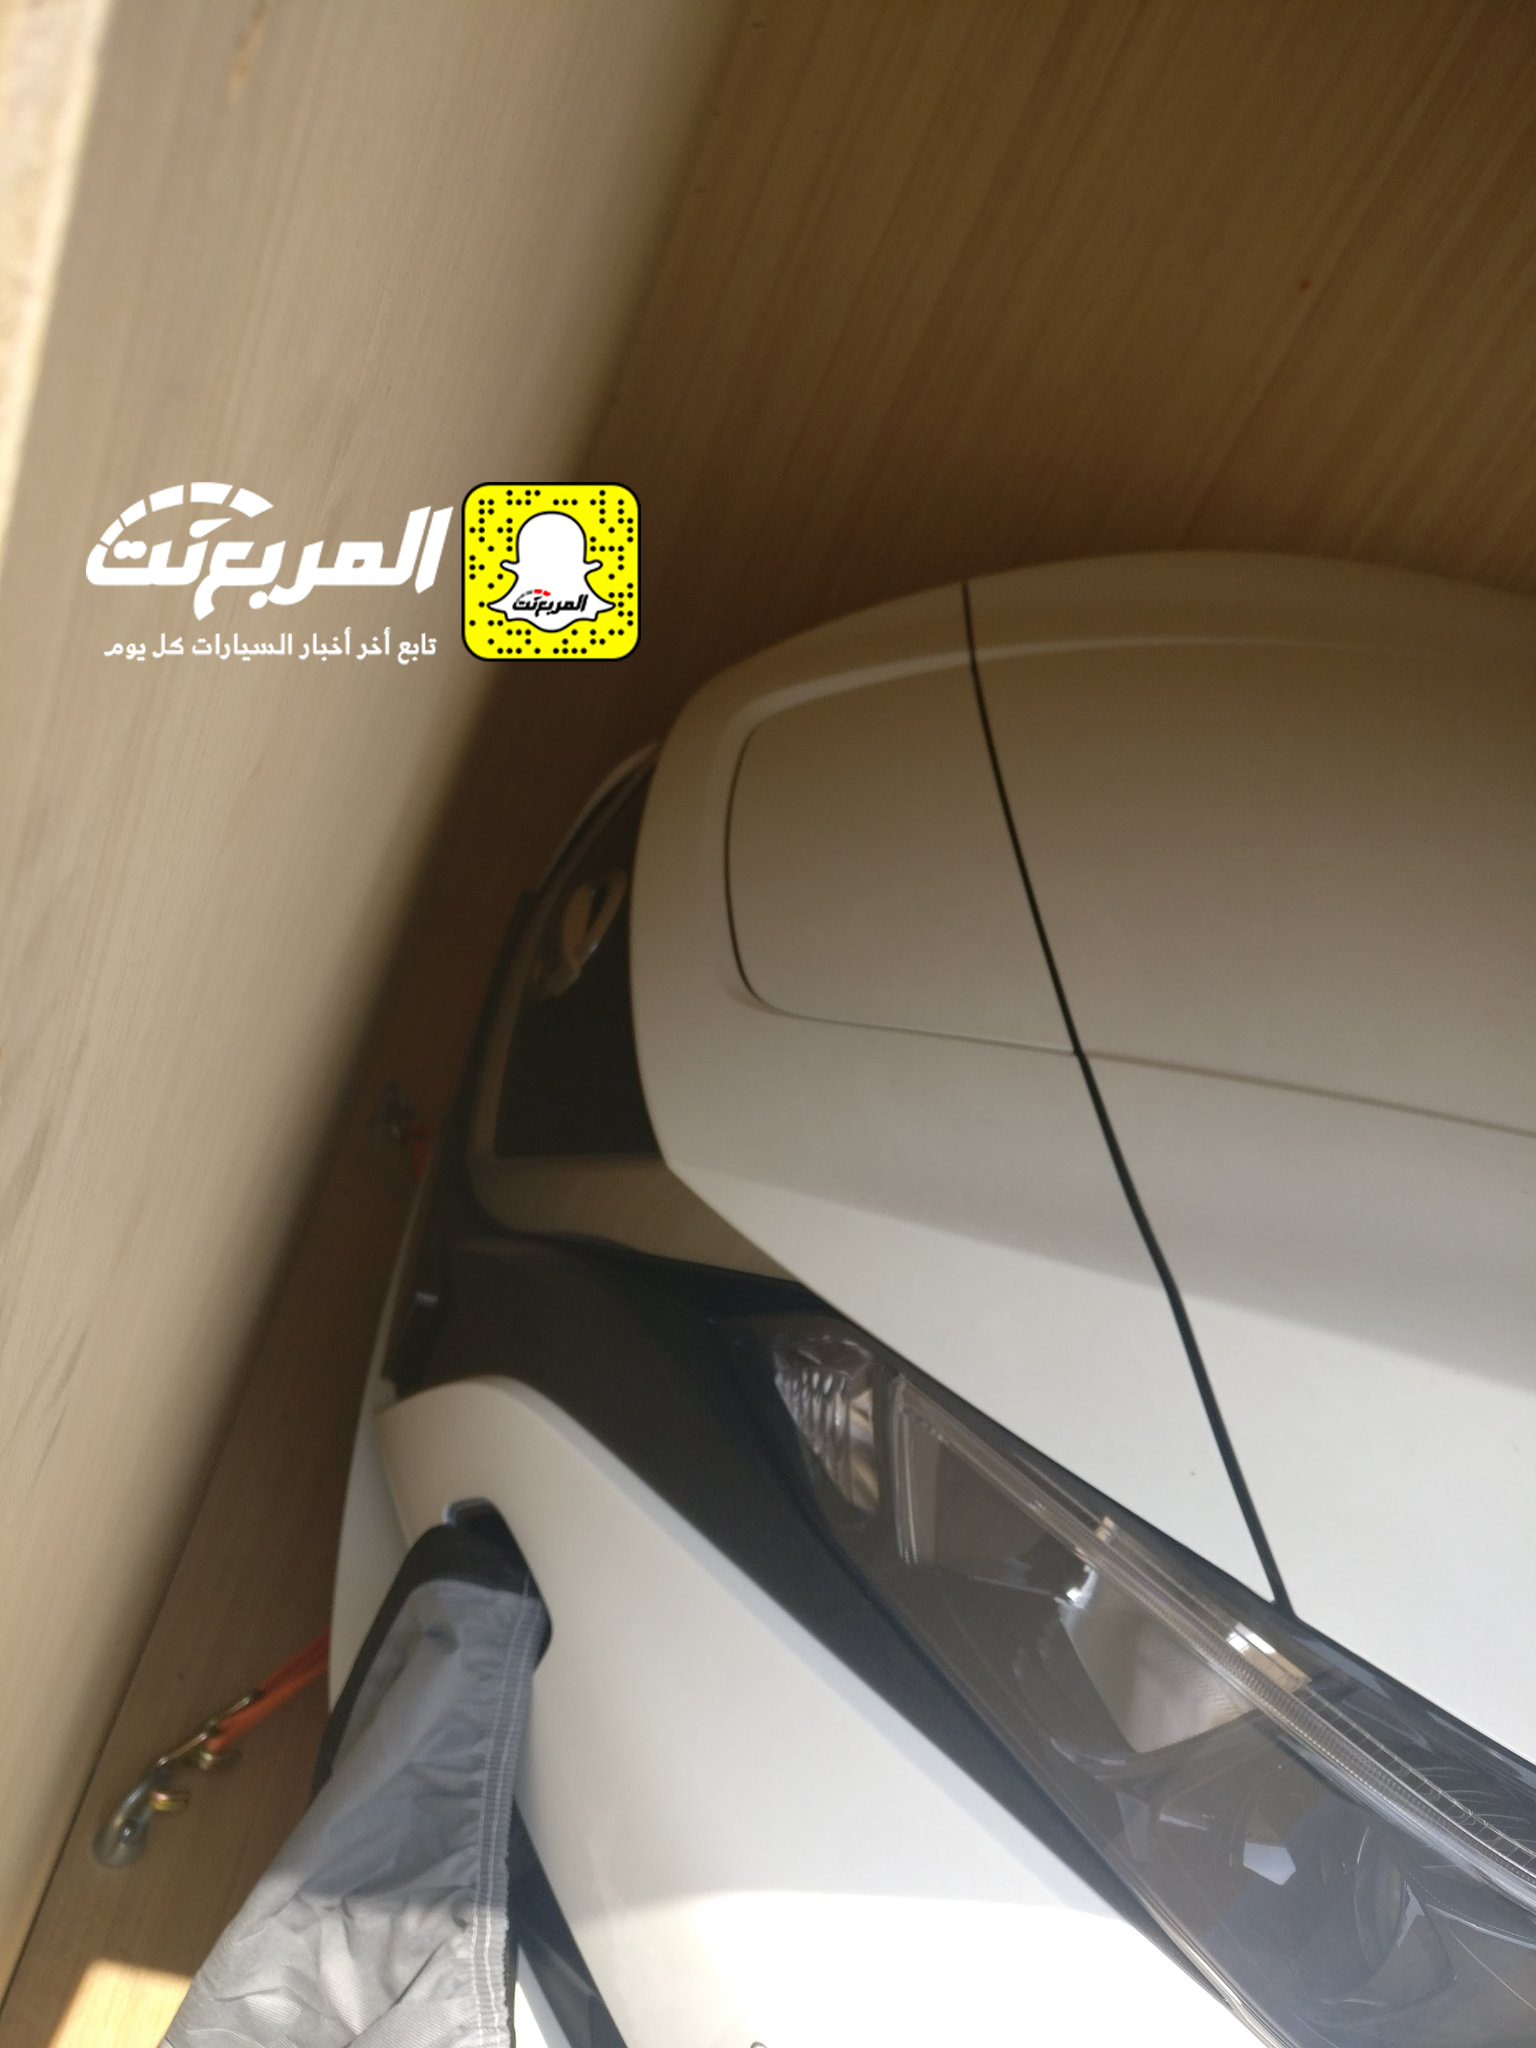 "بالصور" وصول سيارات نيسان ليف الكهربائية الى السعودية لإجراء اختبارات عليها 5